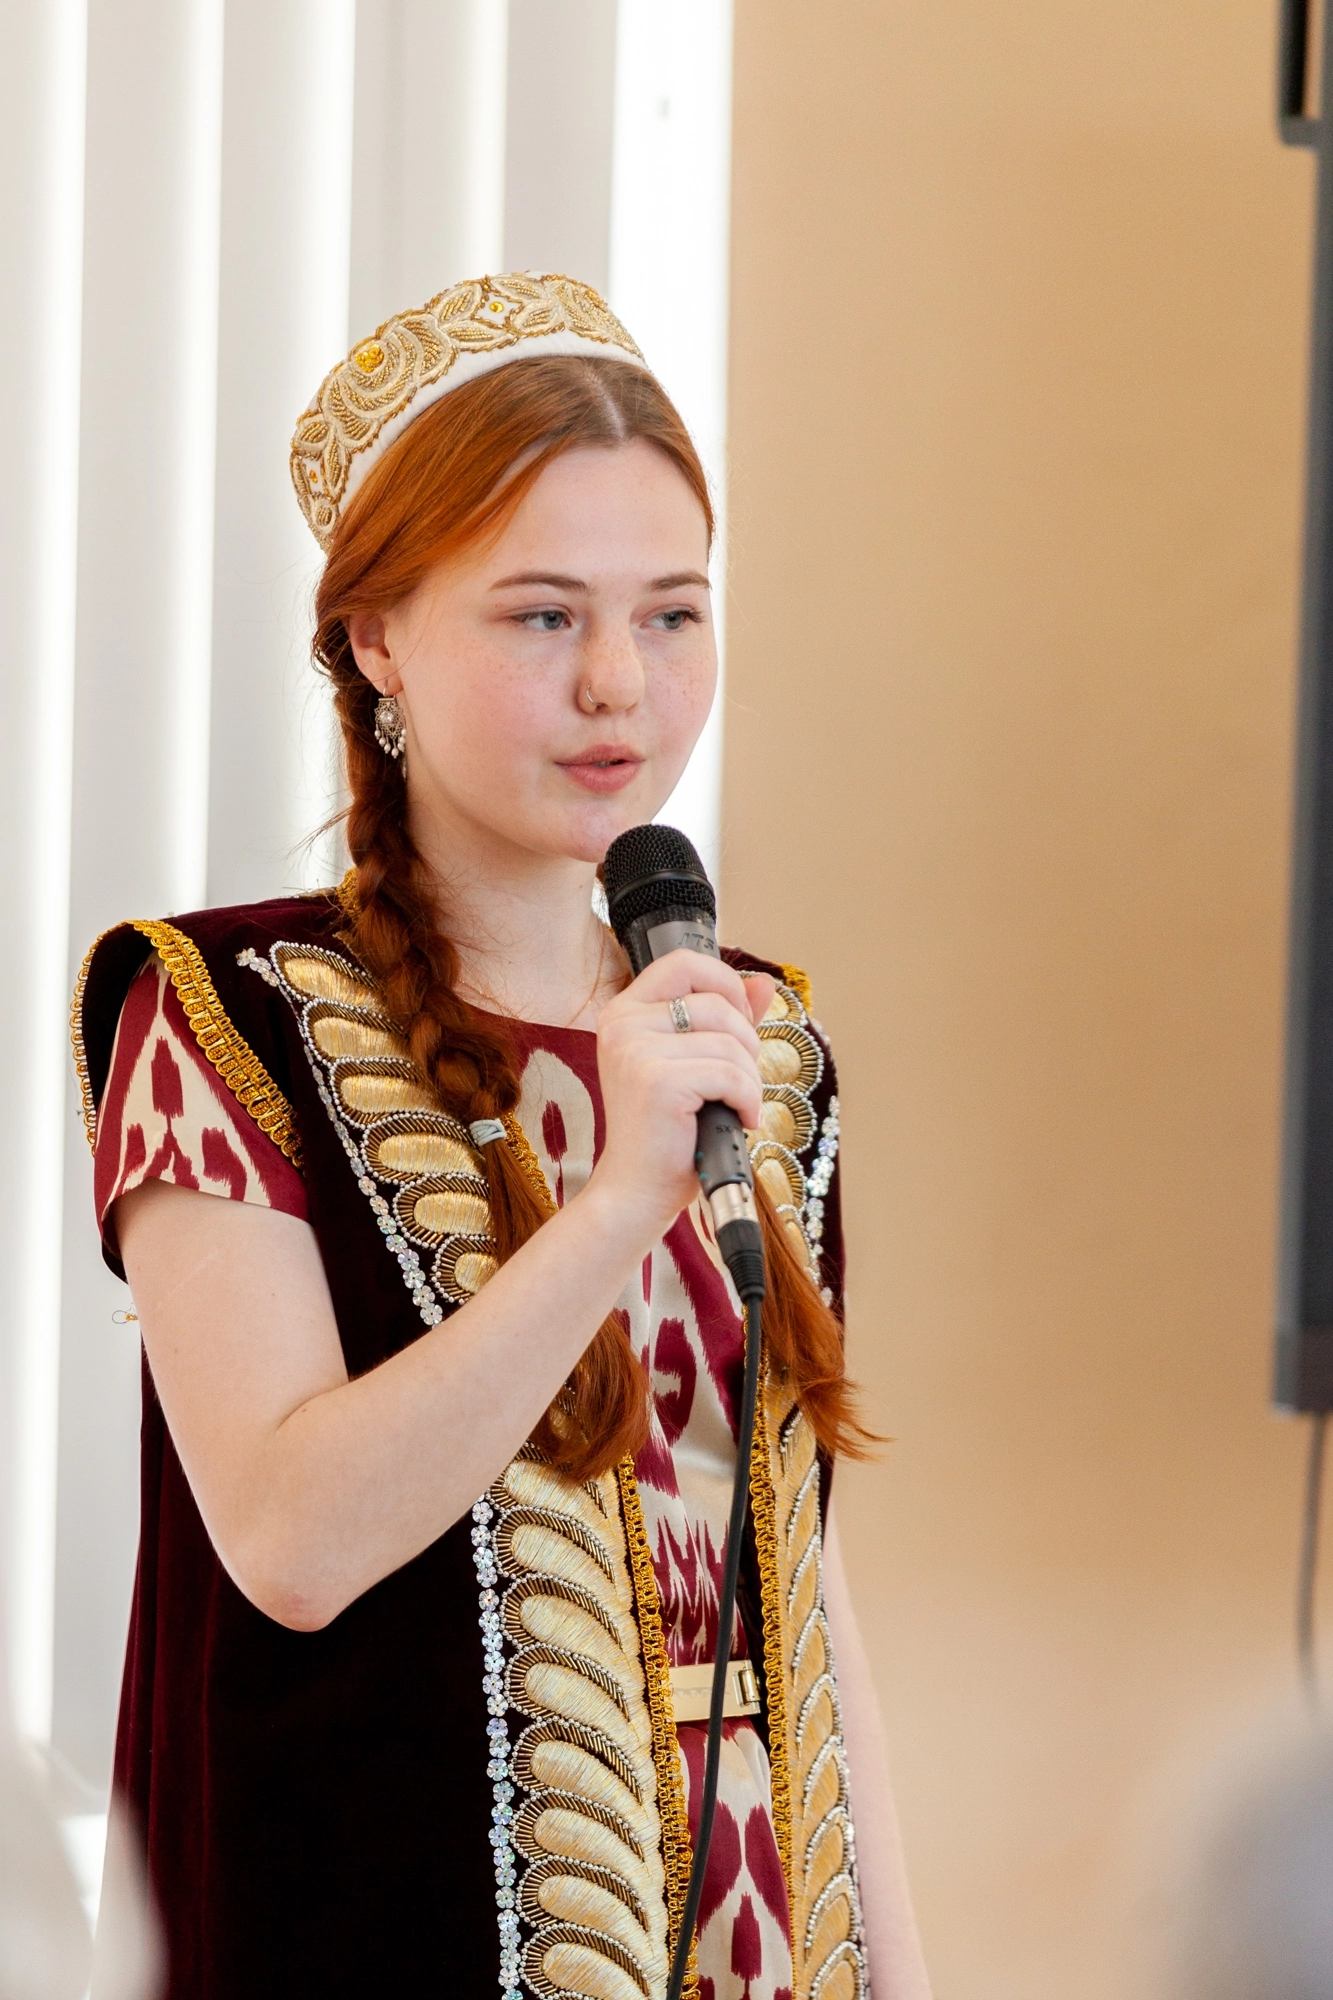 Первый Международный фестиваль национальных культур  «Молодежный этноград»